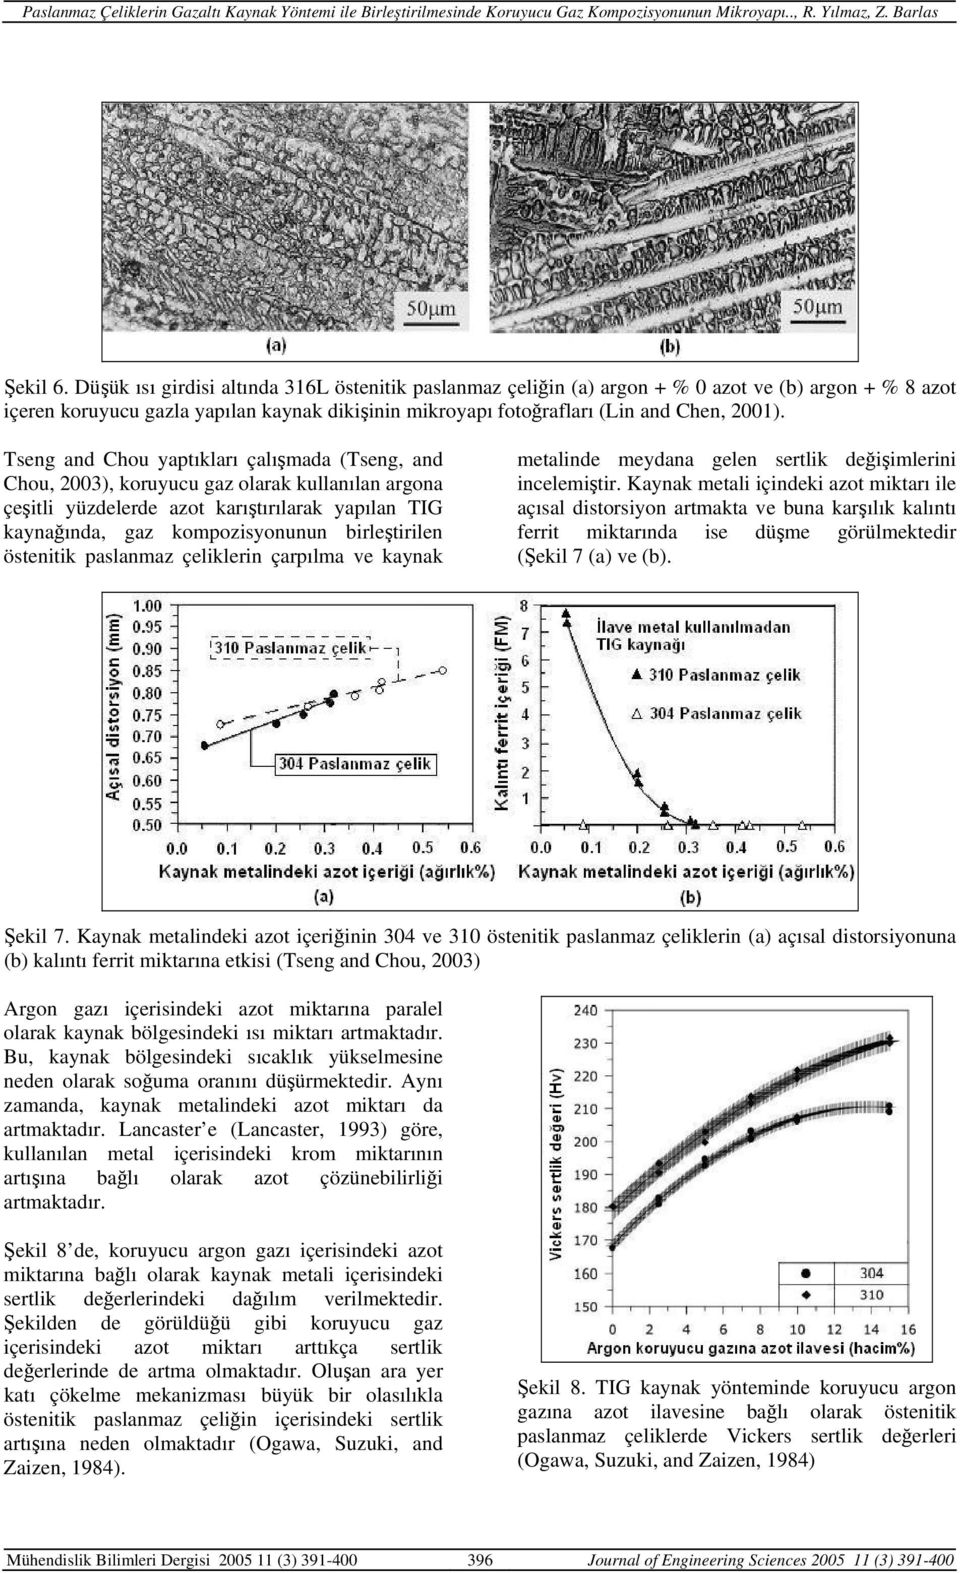 Tseng and Chou yaptıkları çalışmada (Tseng, and Chou, 2003), koruyucu gaz olarak kullanılan argona çeşitli yüzdelerde azot karıştırılarak yapılan TIG kaynağında, gaz kompozisyonunun birleştirilen